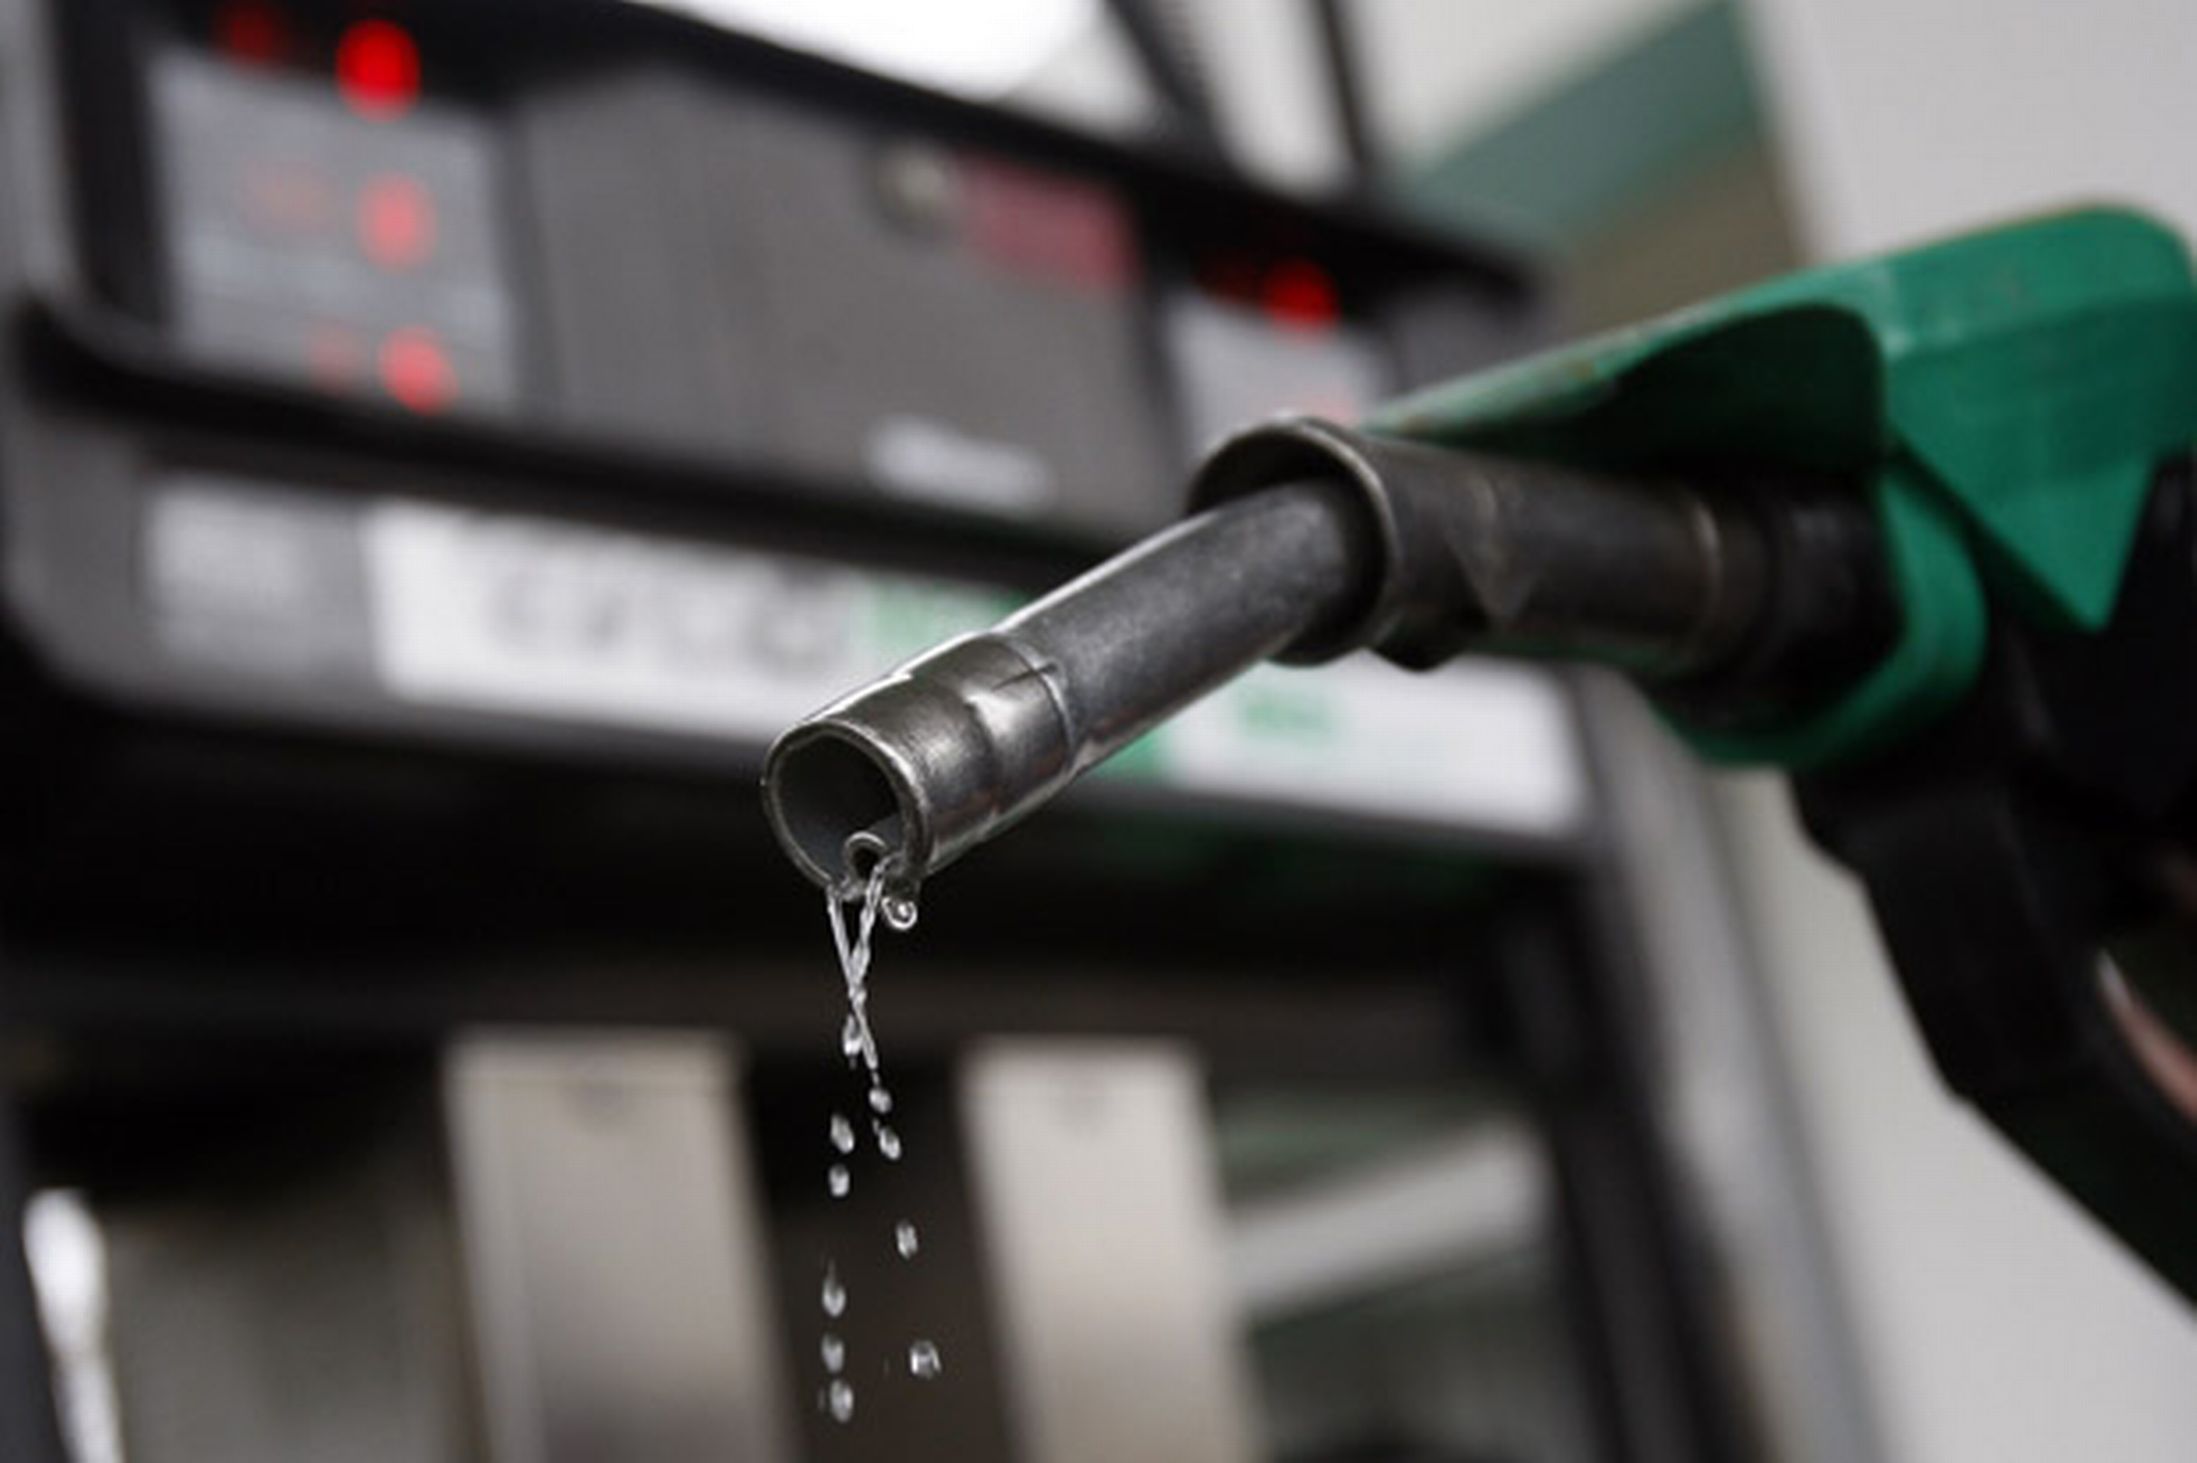  واردات بنزین به ۵ میلیون دلار در روز رسید/روند صعودی واردات در دولت یازدهم+نمودار 